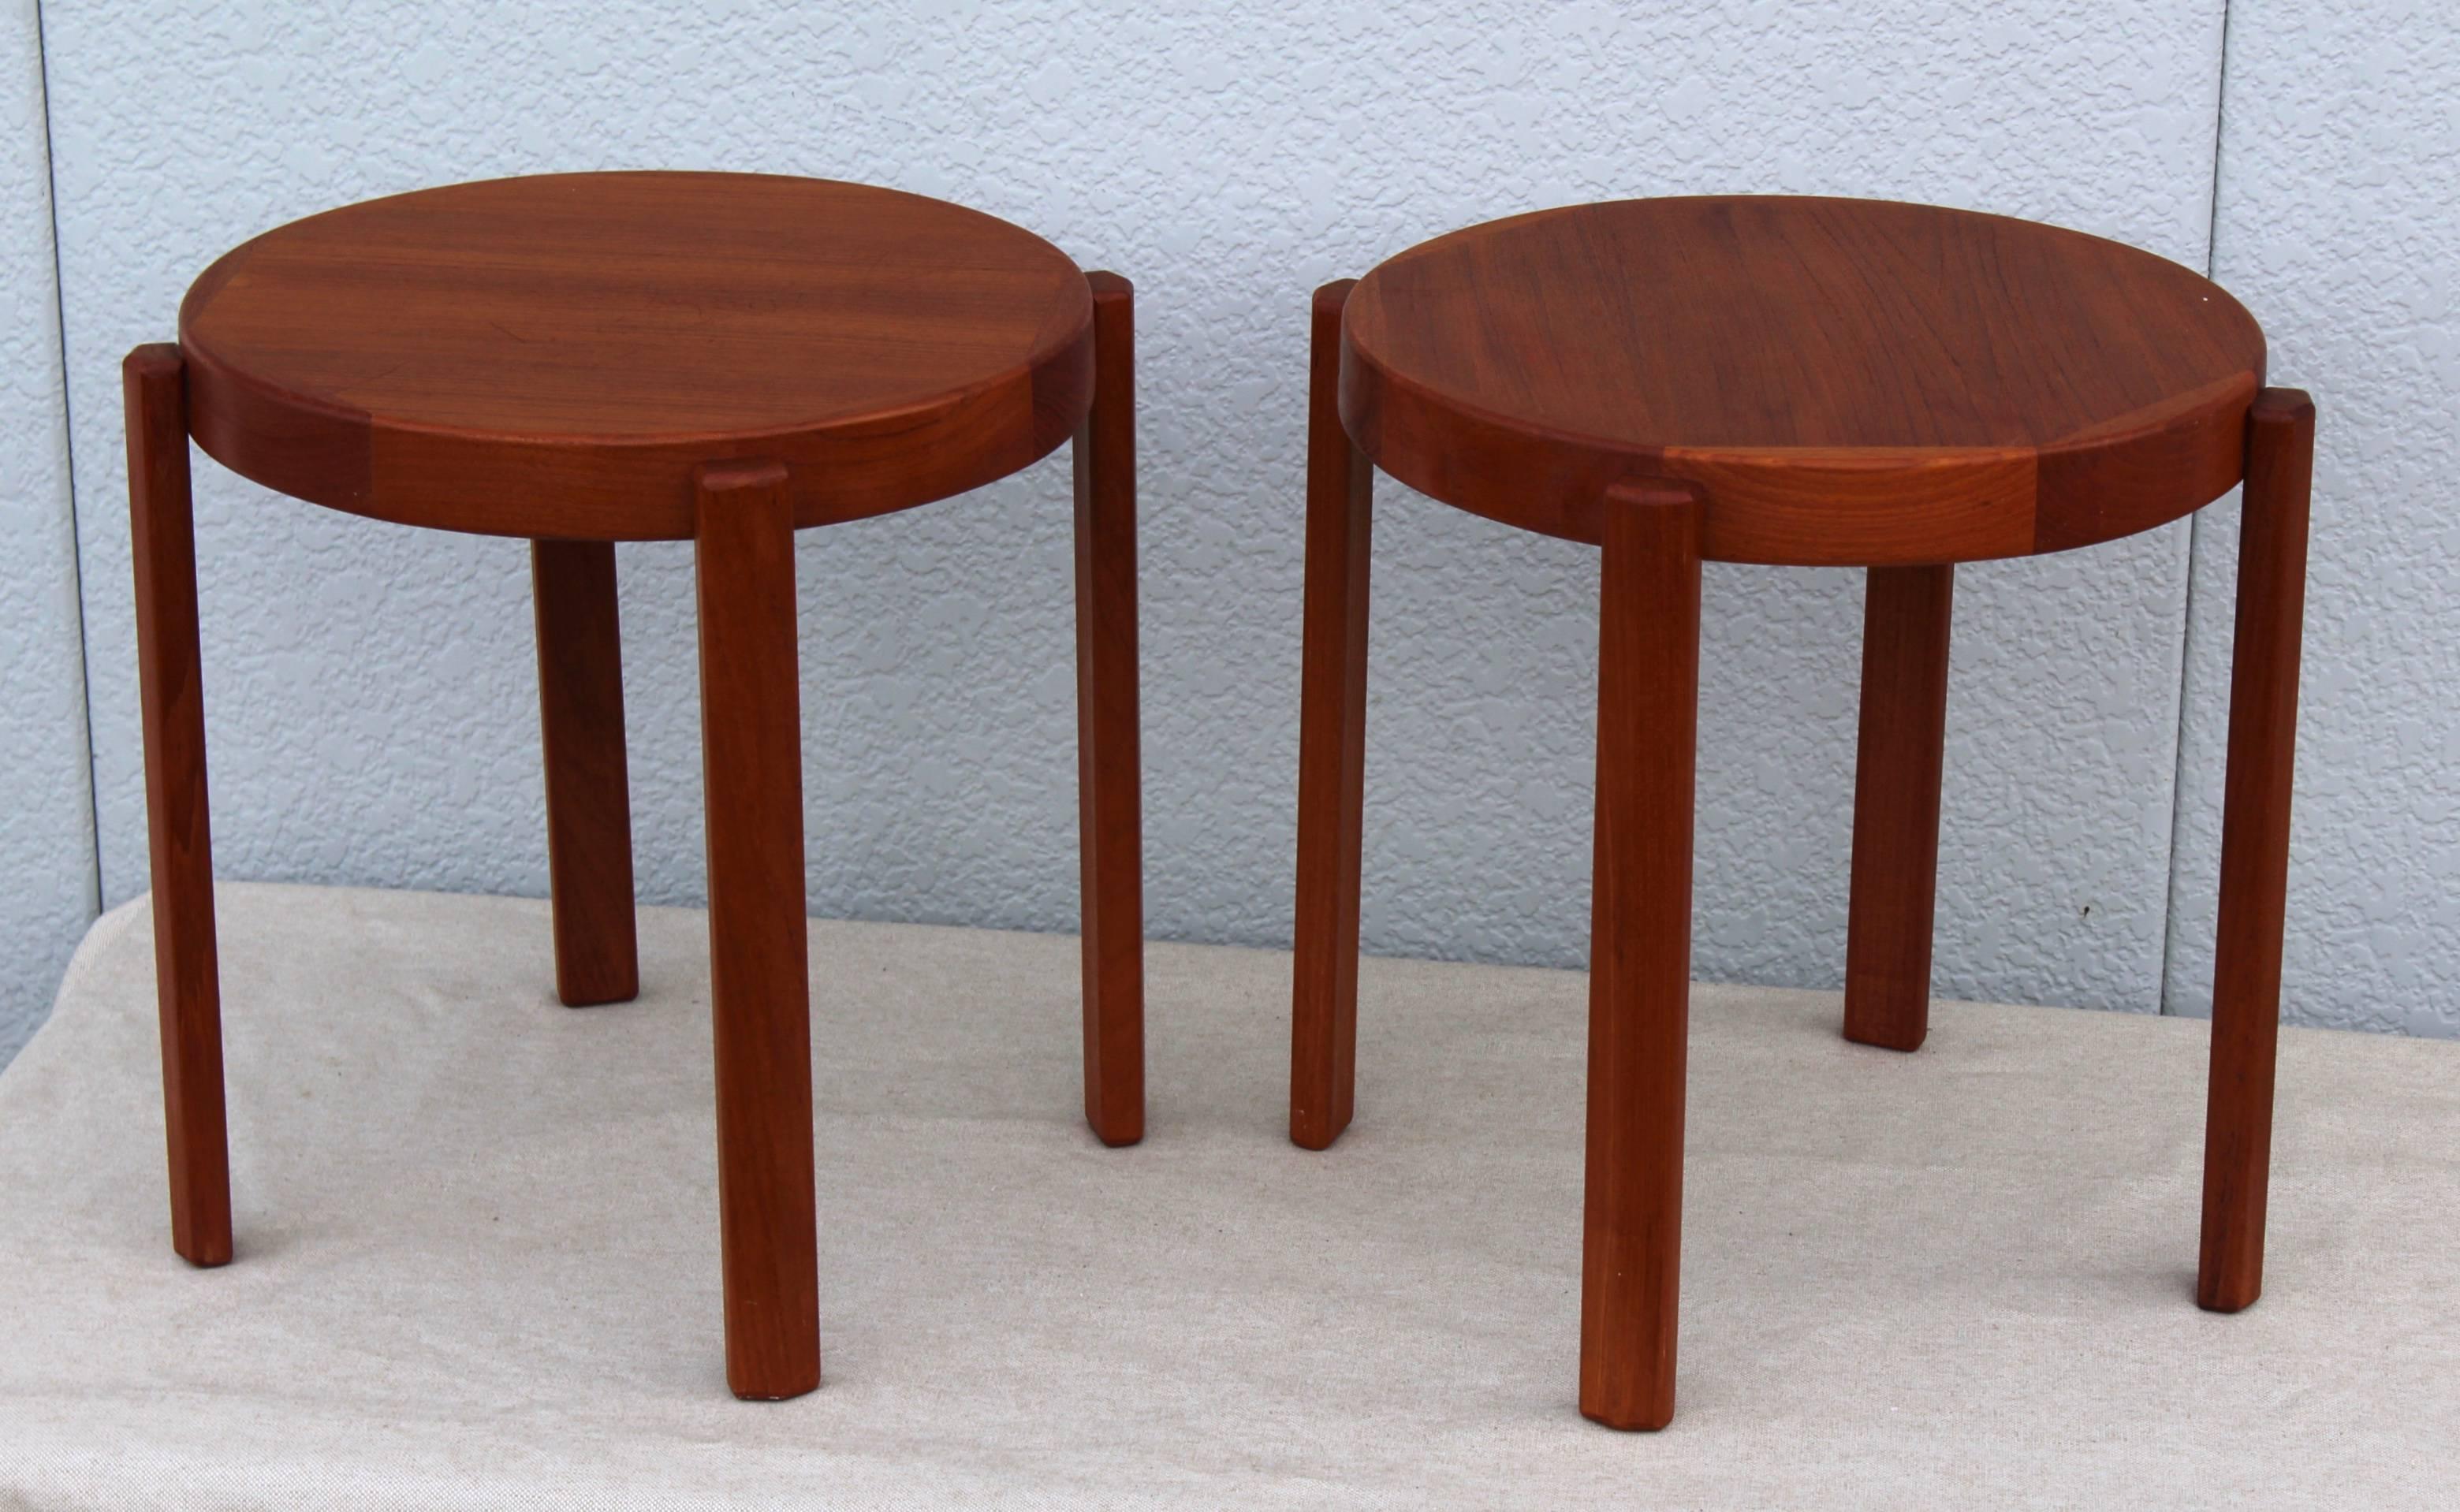 1960s modern Danish teak side tables.